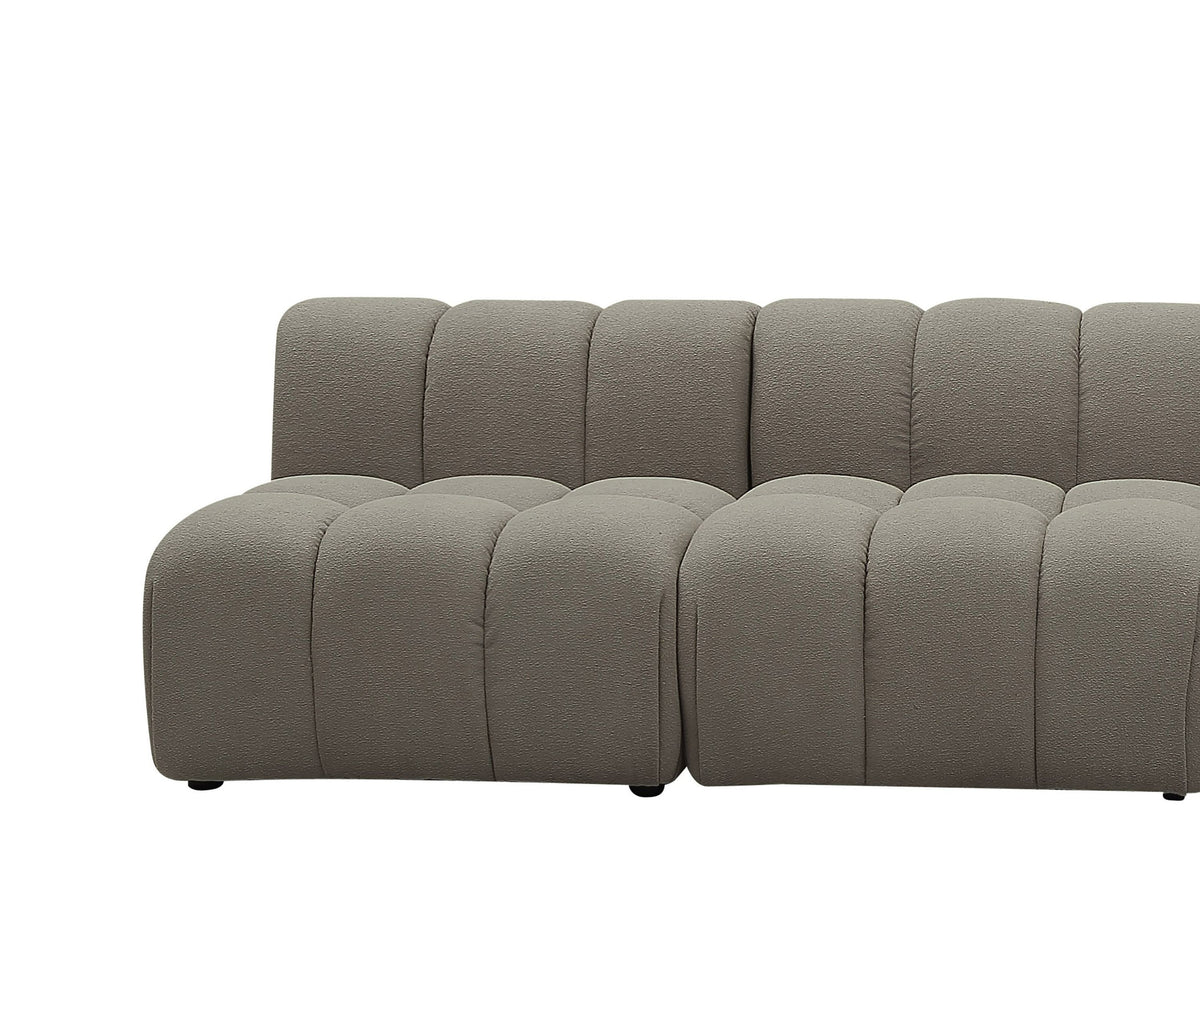 Kima Modern Grey Modular Sectional Sofa